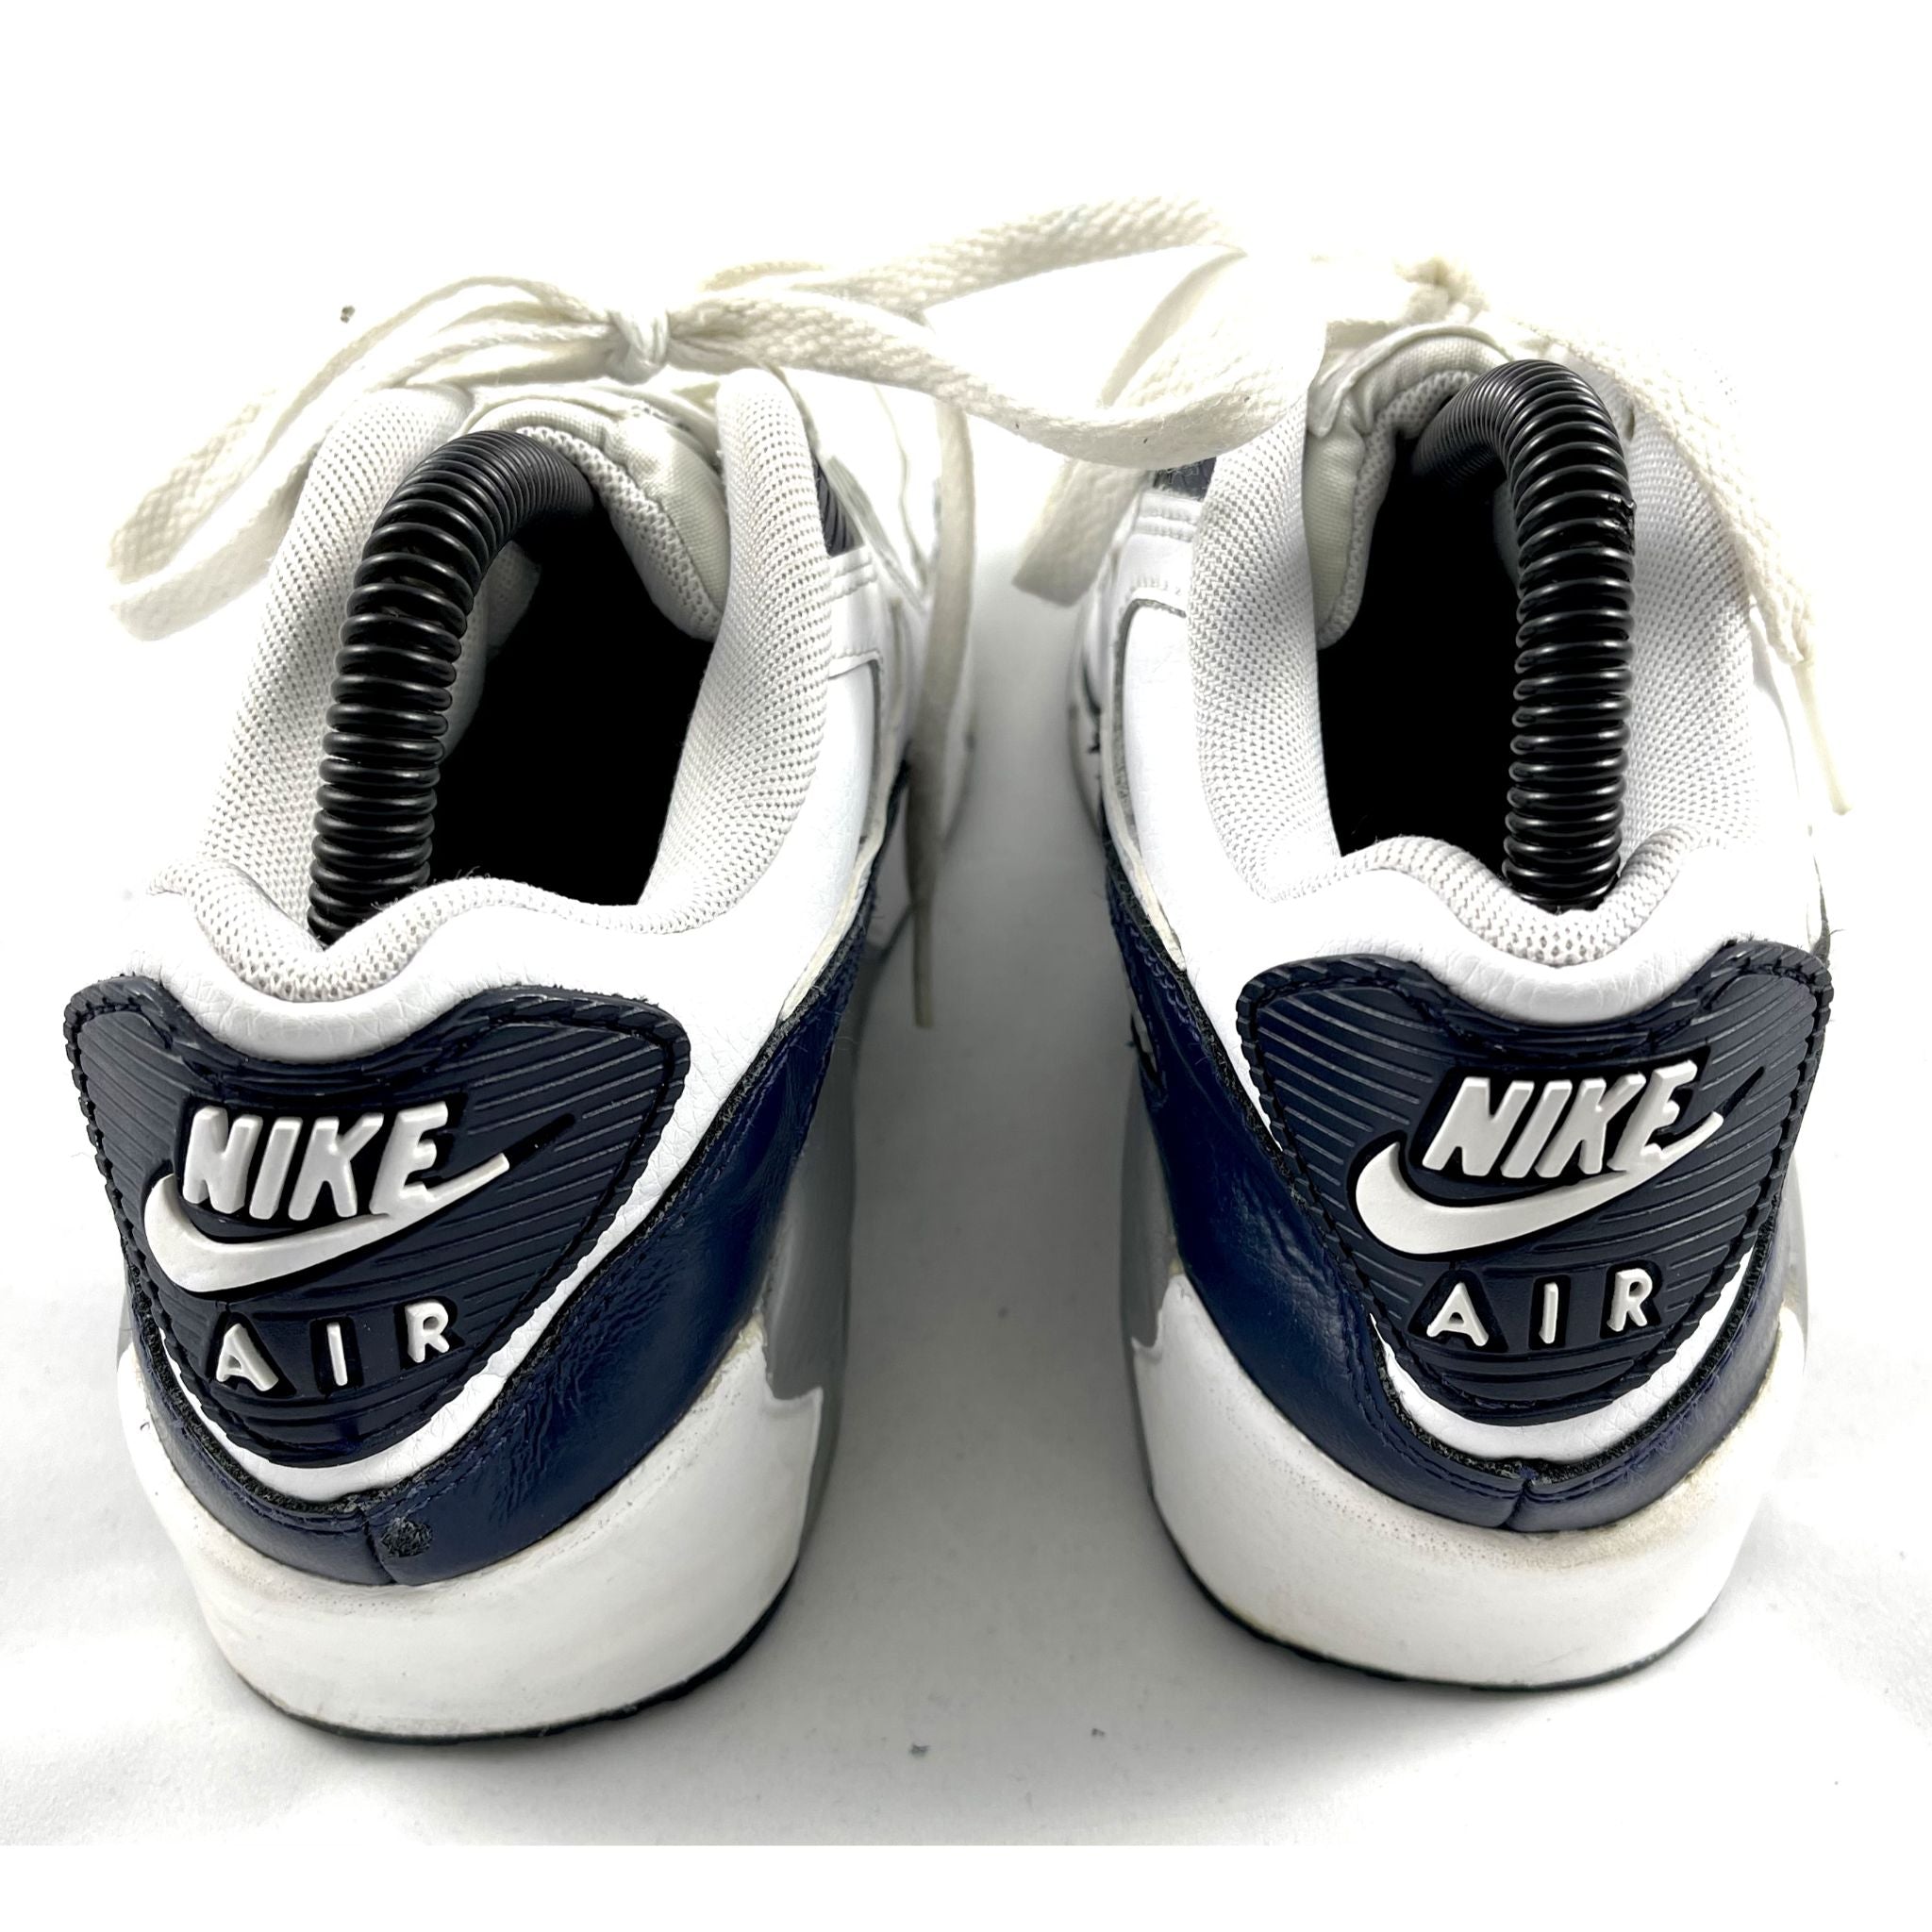 Nike Air Shoes